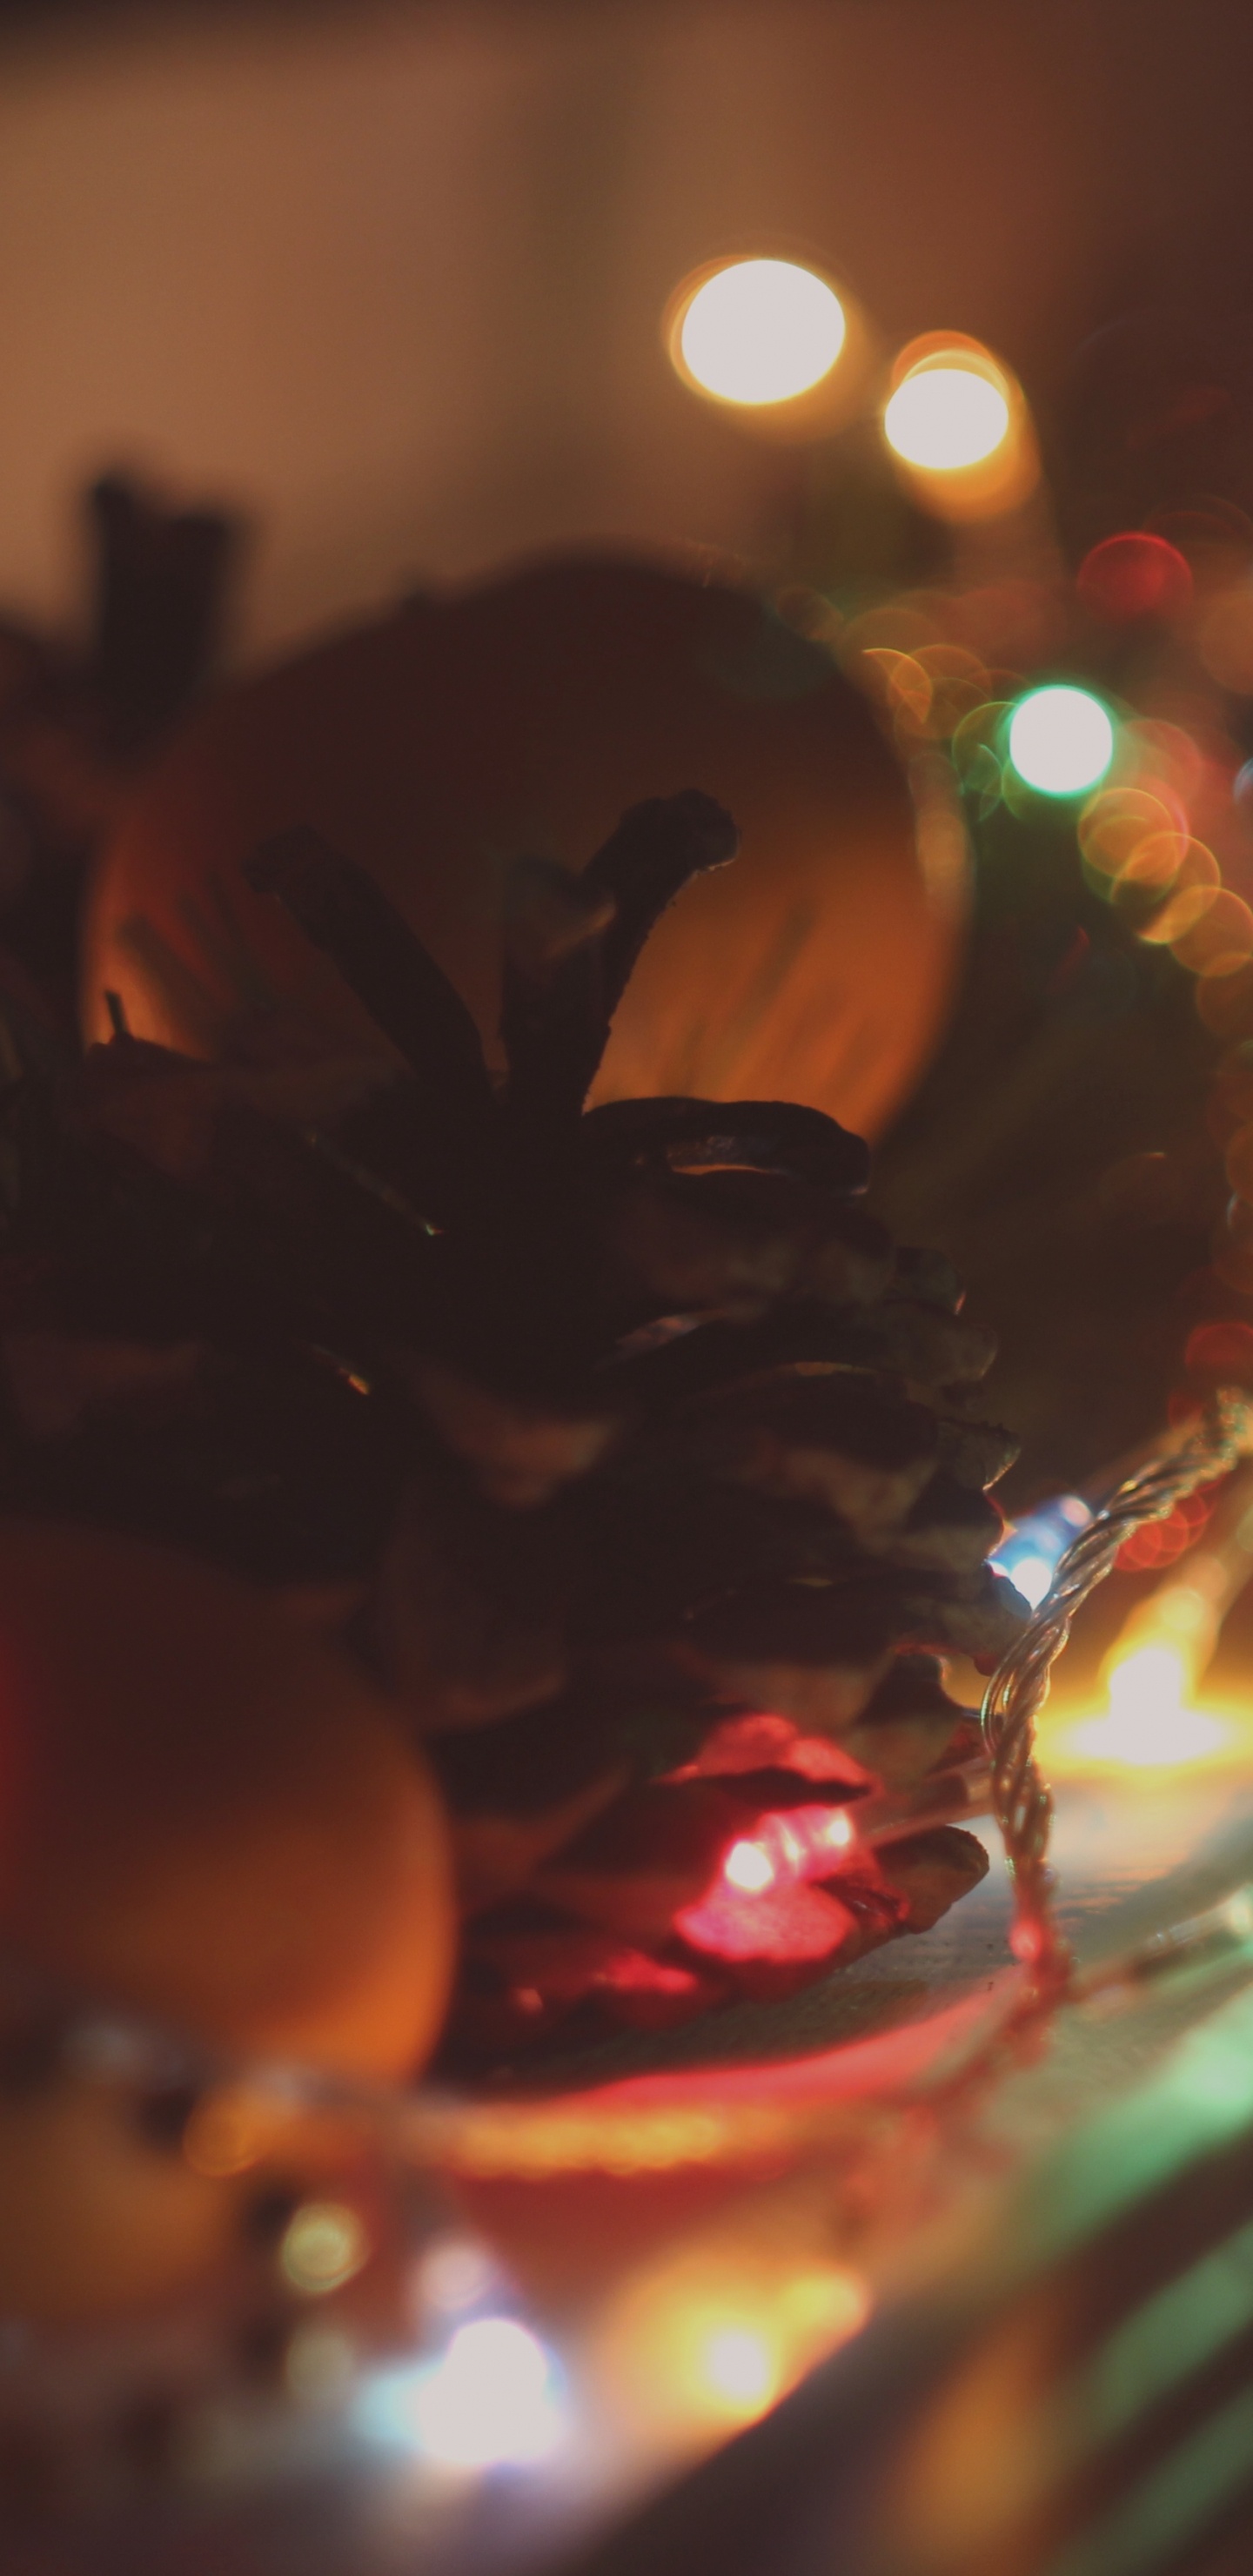 Weihnachtsbeleuchtung, Licht, Nacht, Weihnachten, Weihnachtsdekoration. Wallpaper in 1440x2960 Resolution